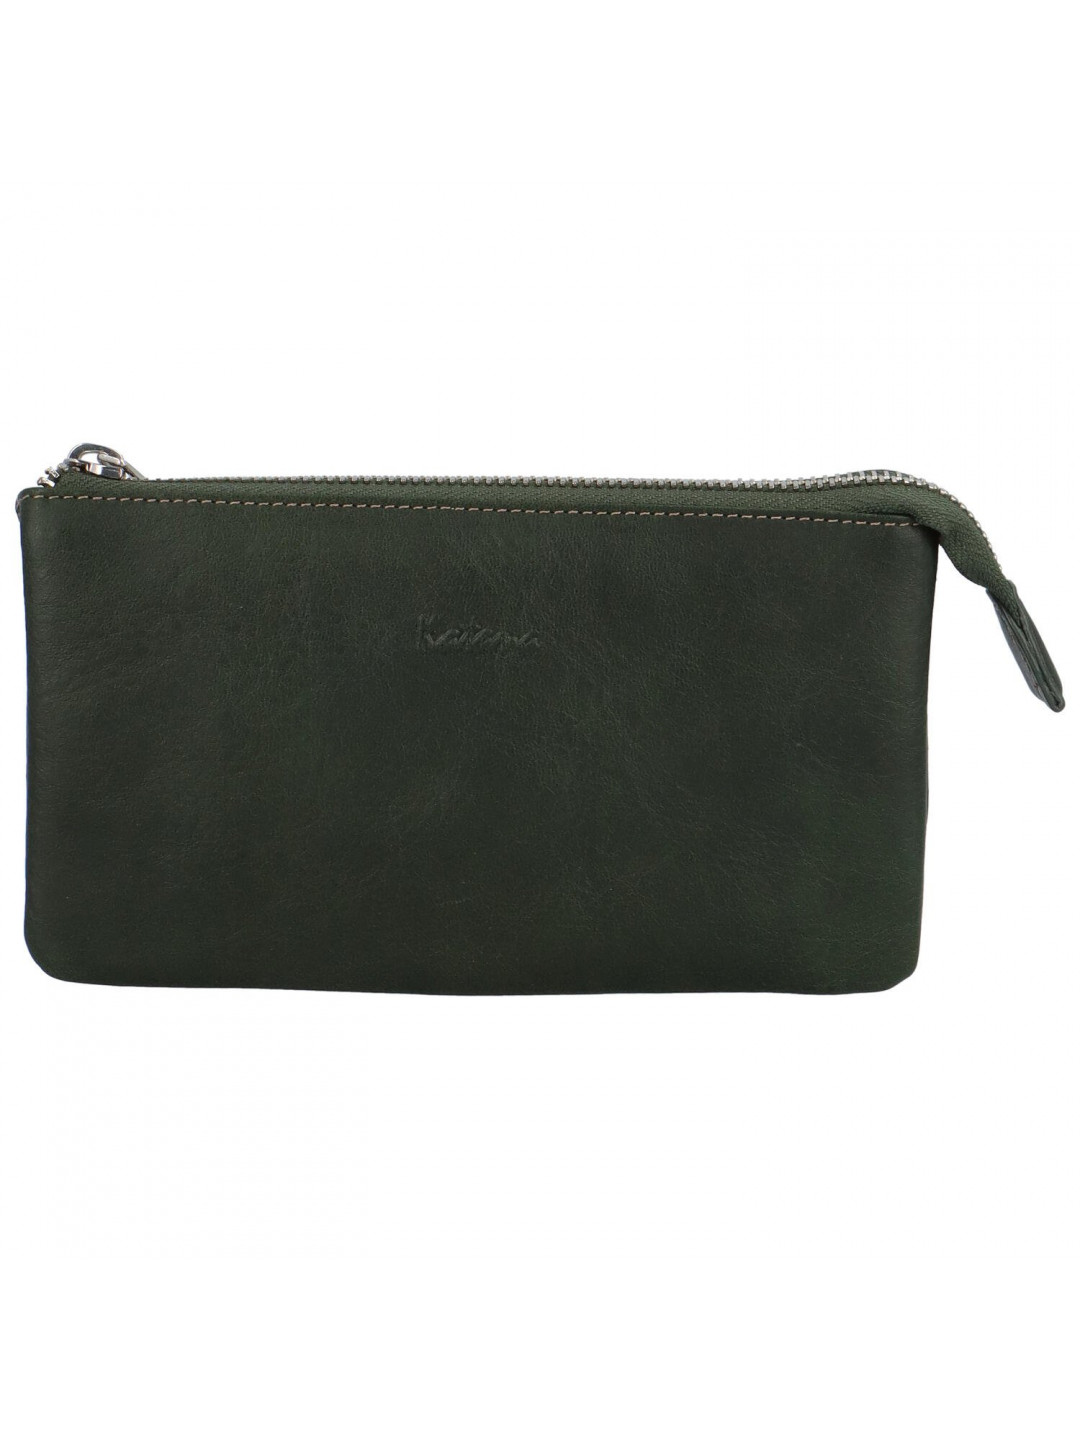 Dámská kožená peněženka tmavě zelená – Katana Sialla